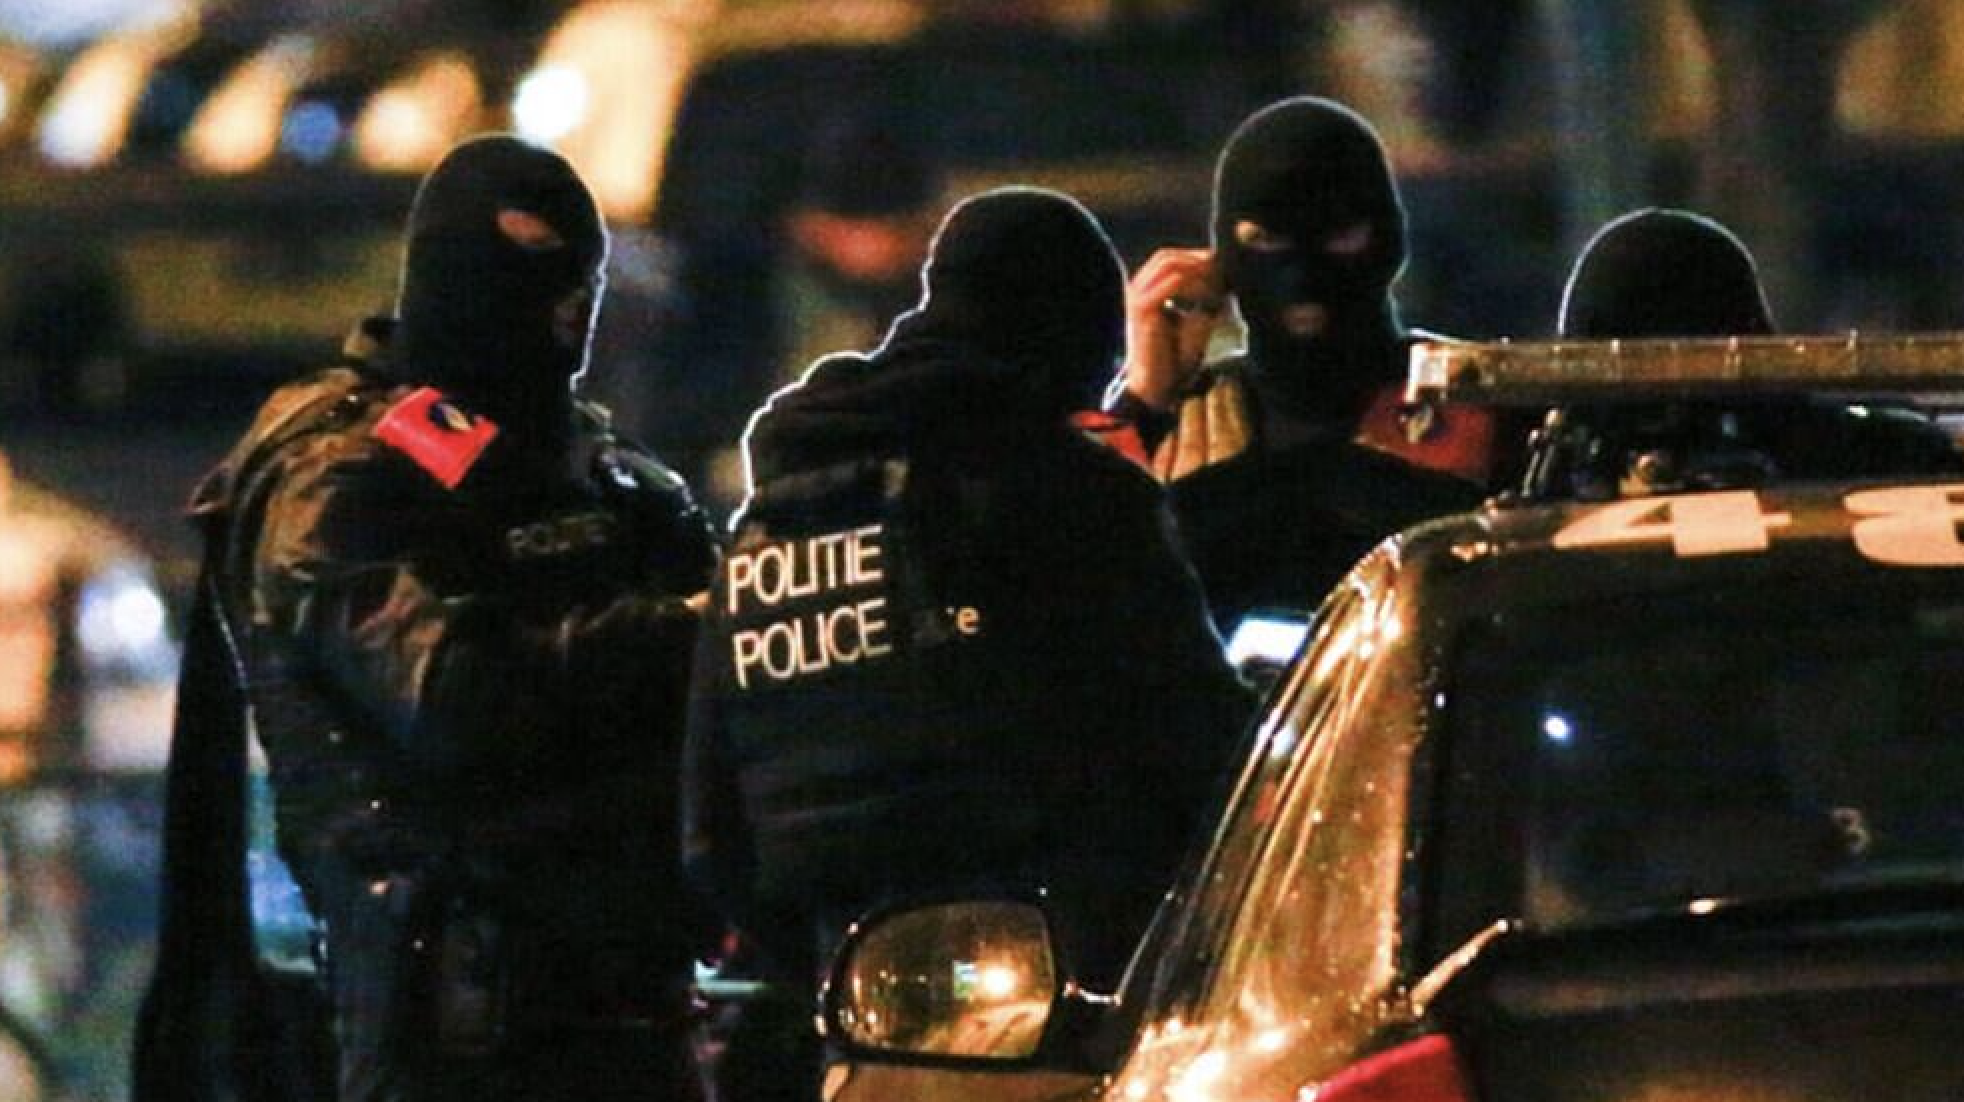 Belçika ve Fransa’daki Kürt kurumlarına operasyon: Gözaltılar var